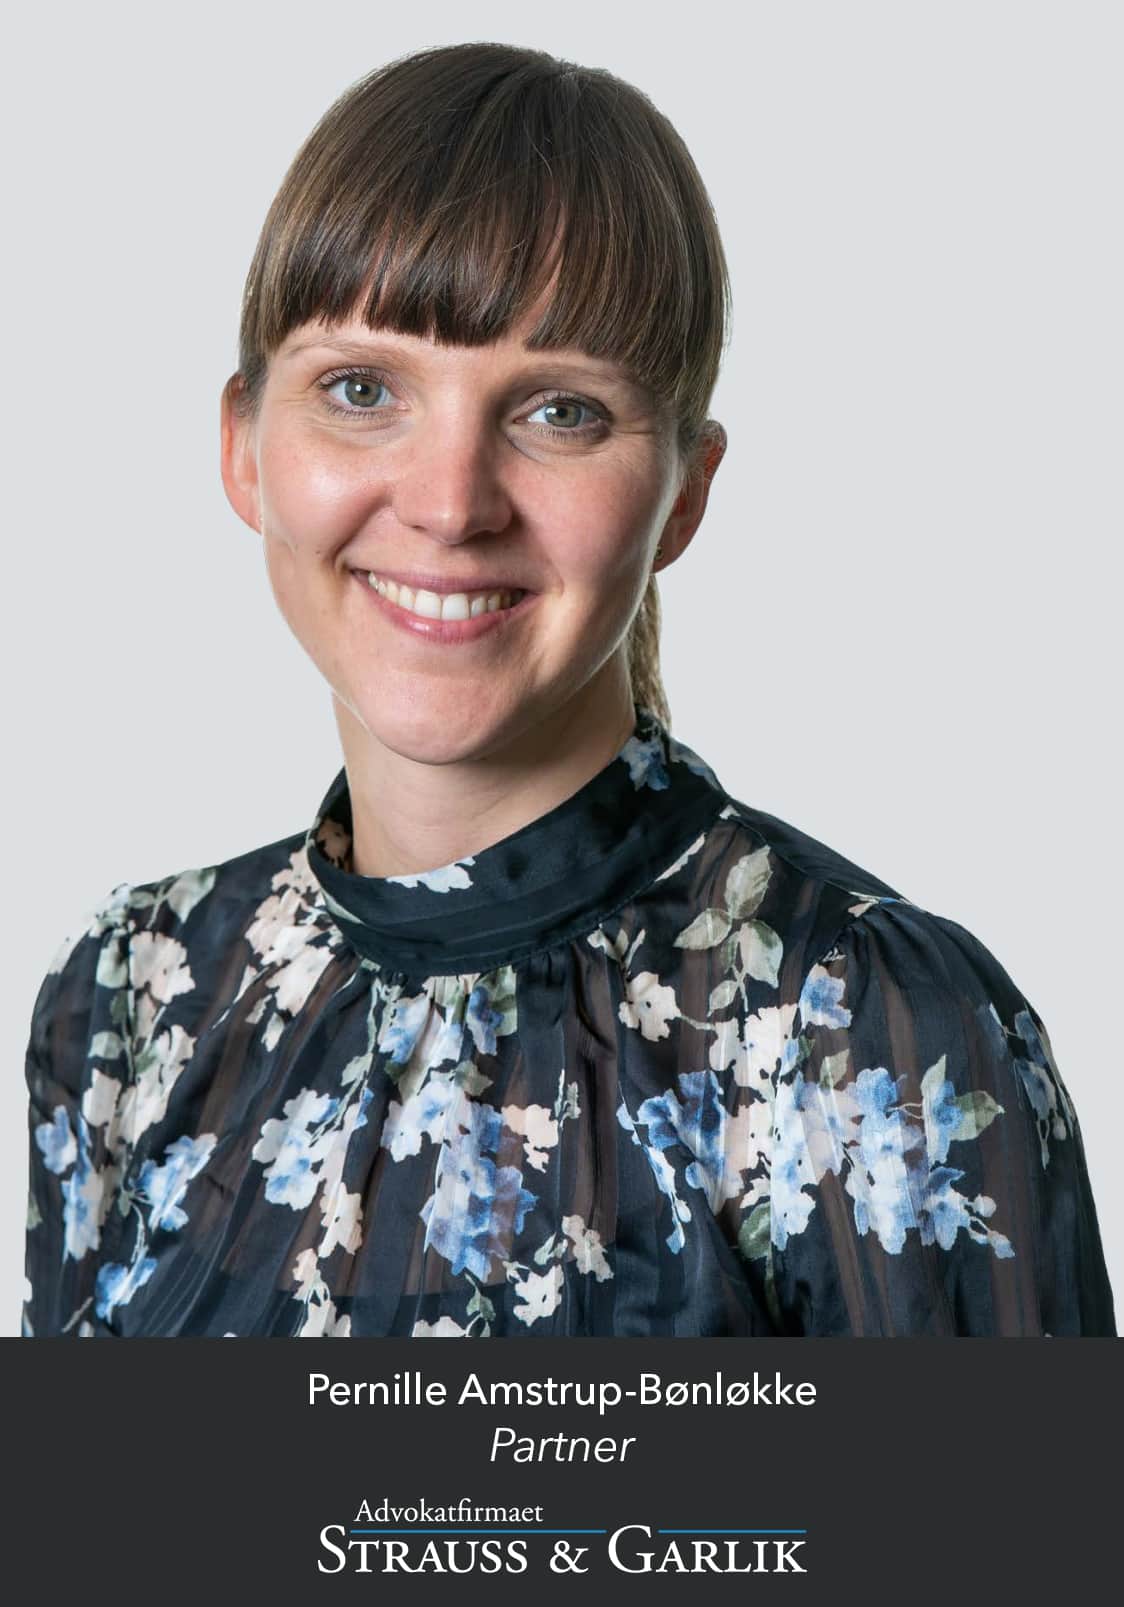 Advokat Pernille Amstrup-Bønløkke - Partner